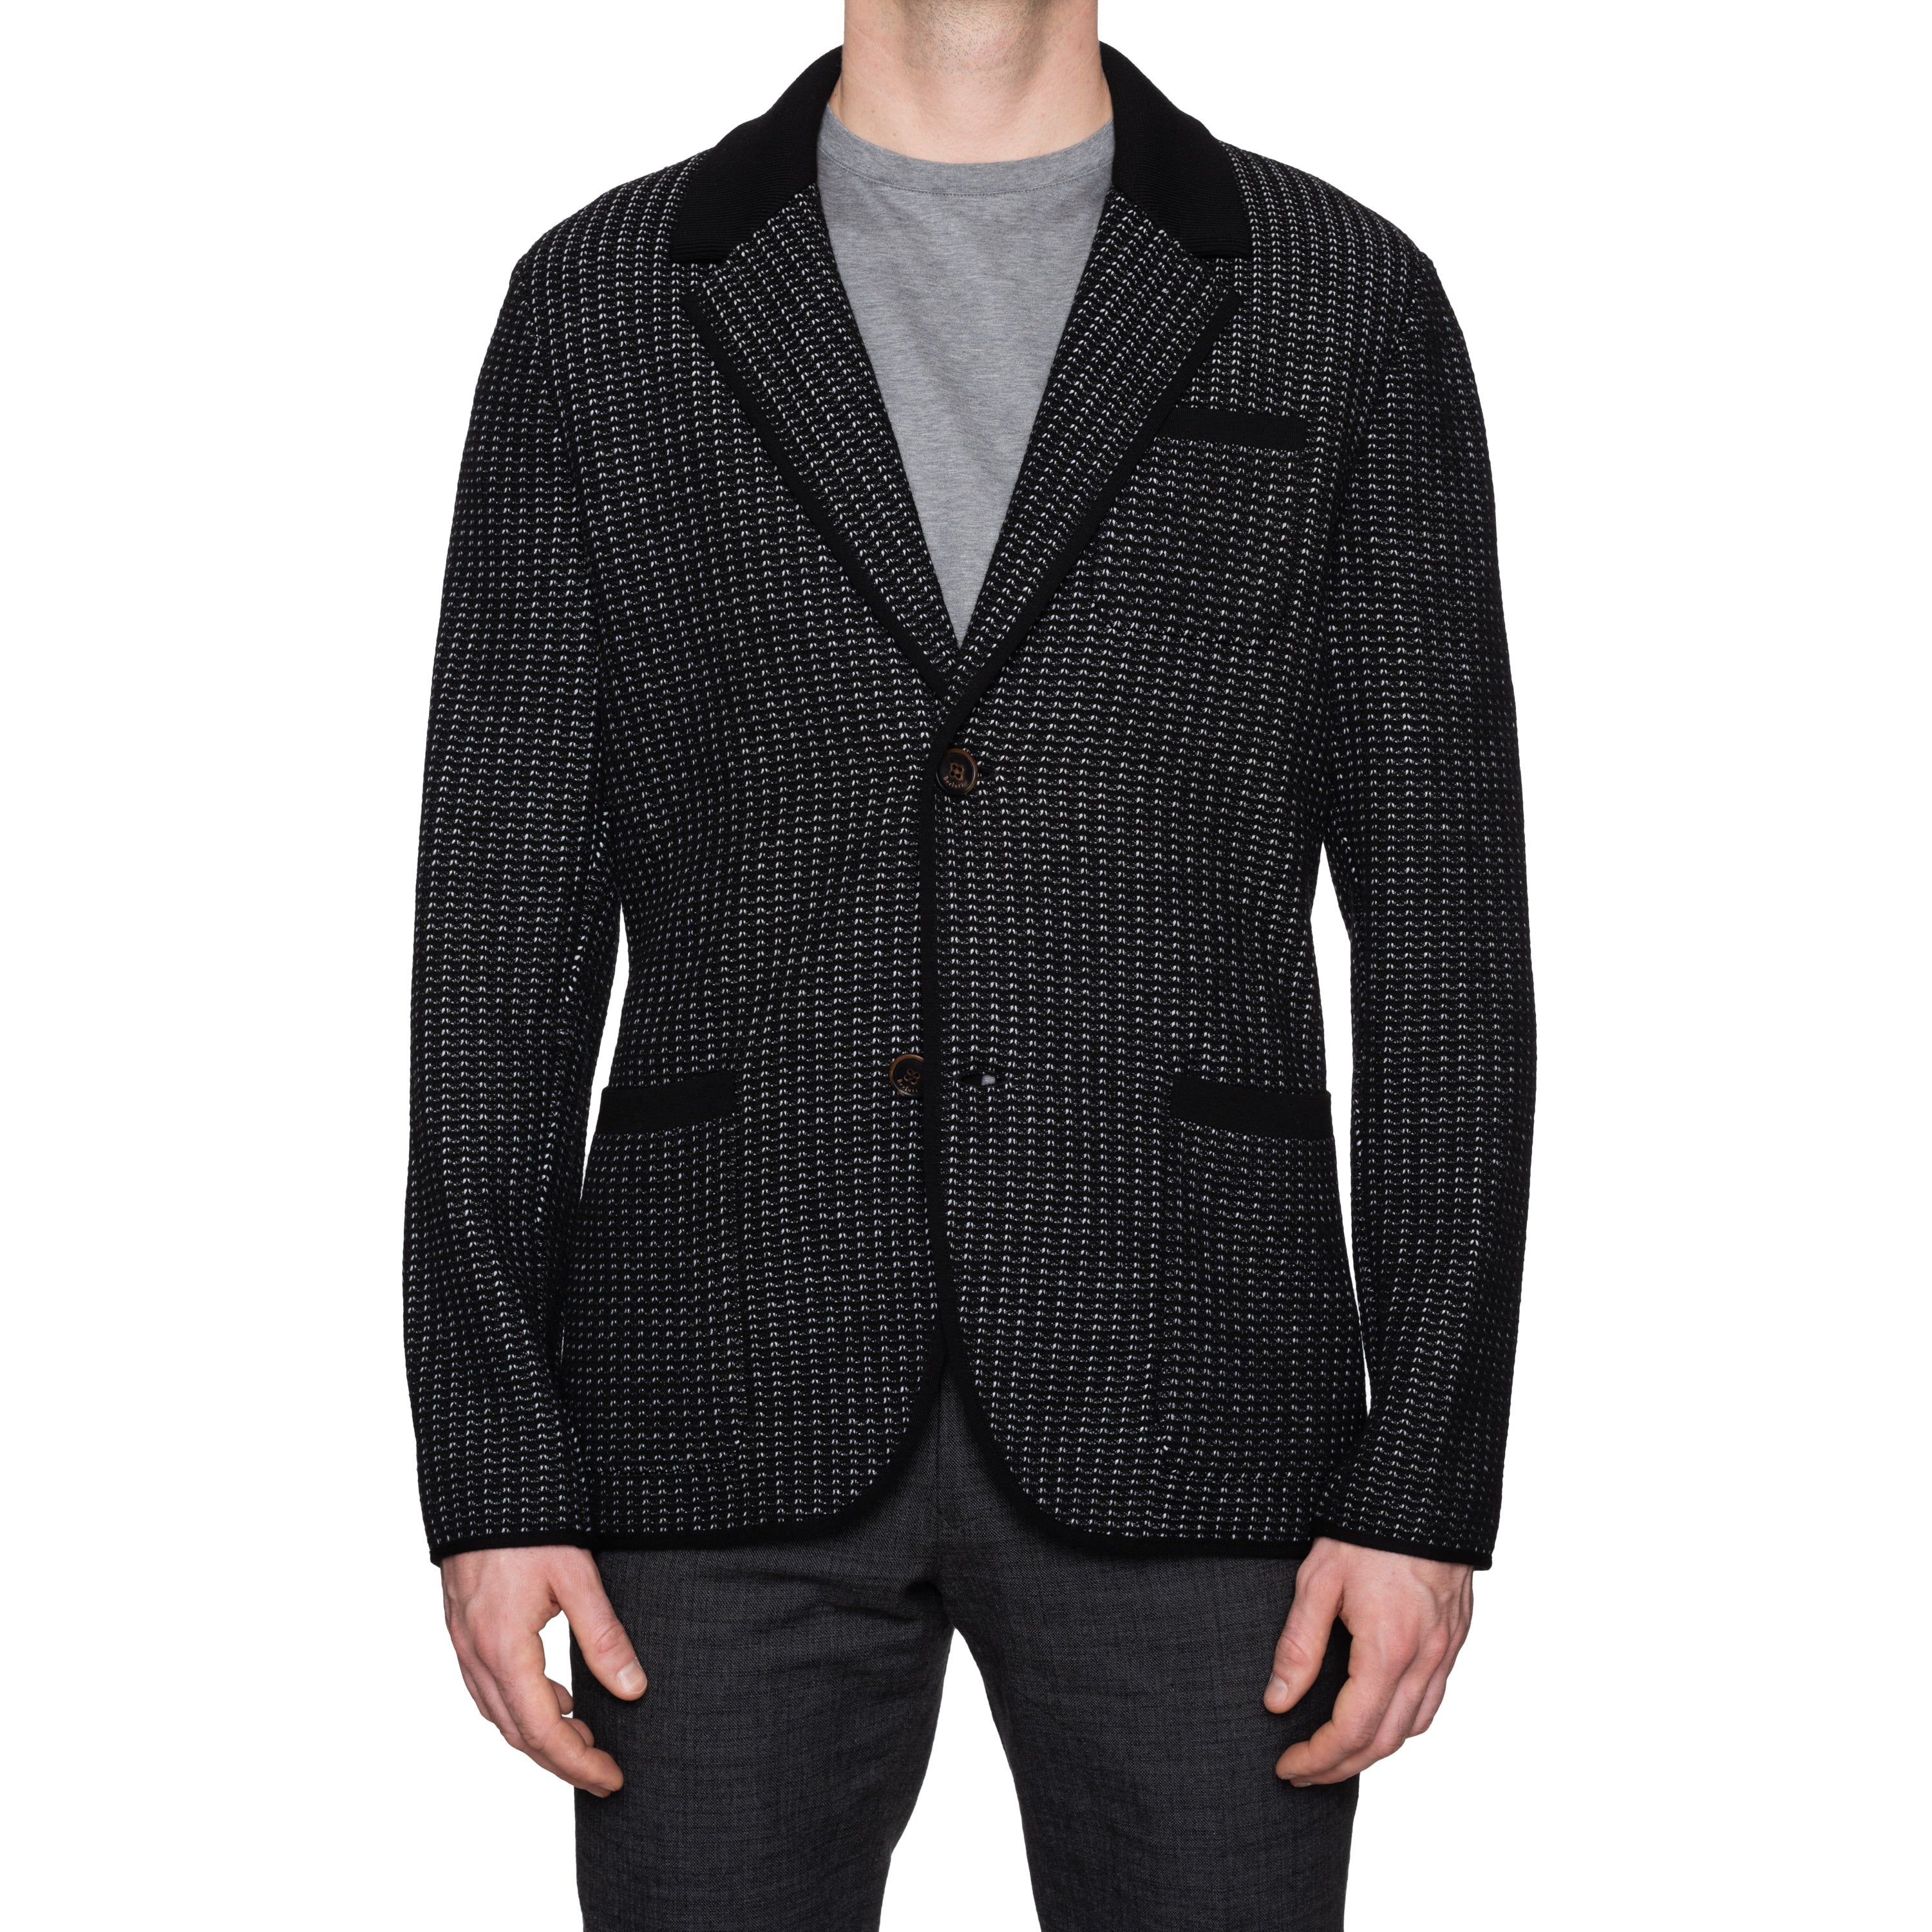 NEW Black EU 50 Wool Knitted Blazer Paris US Cardigan Sweater BERLUTI